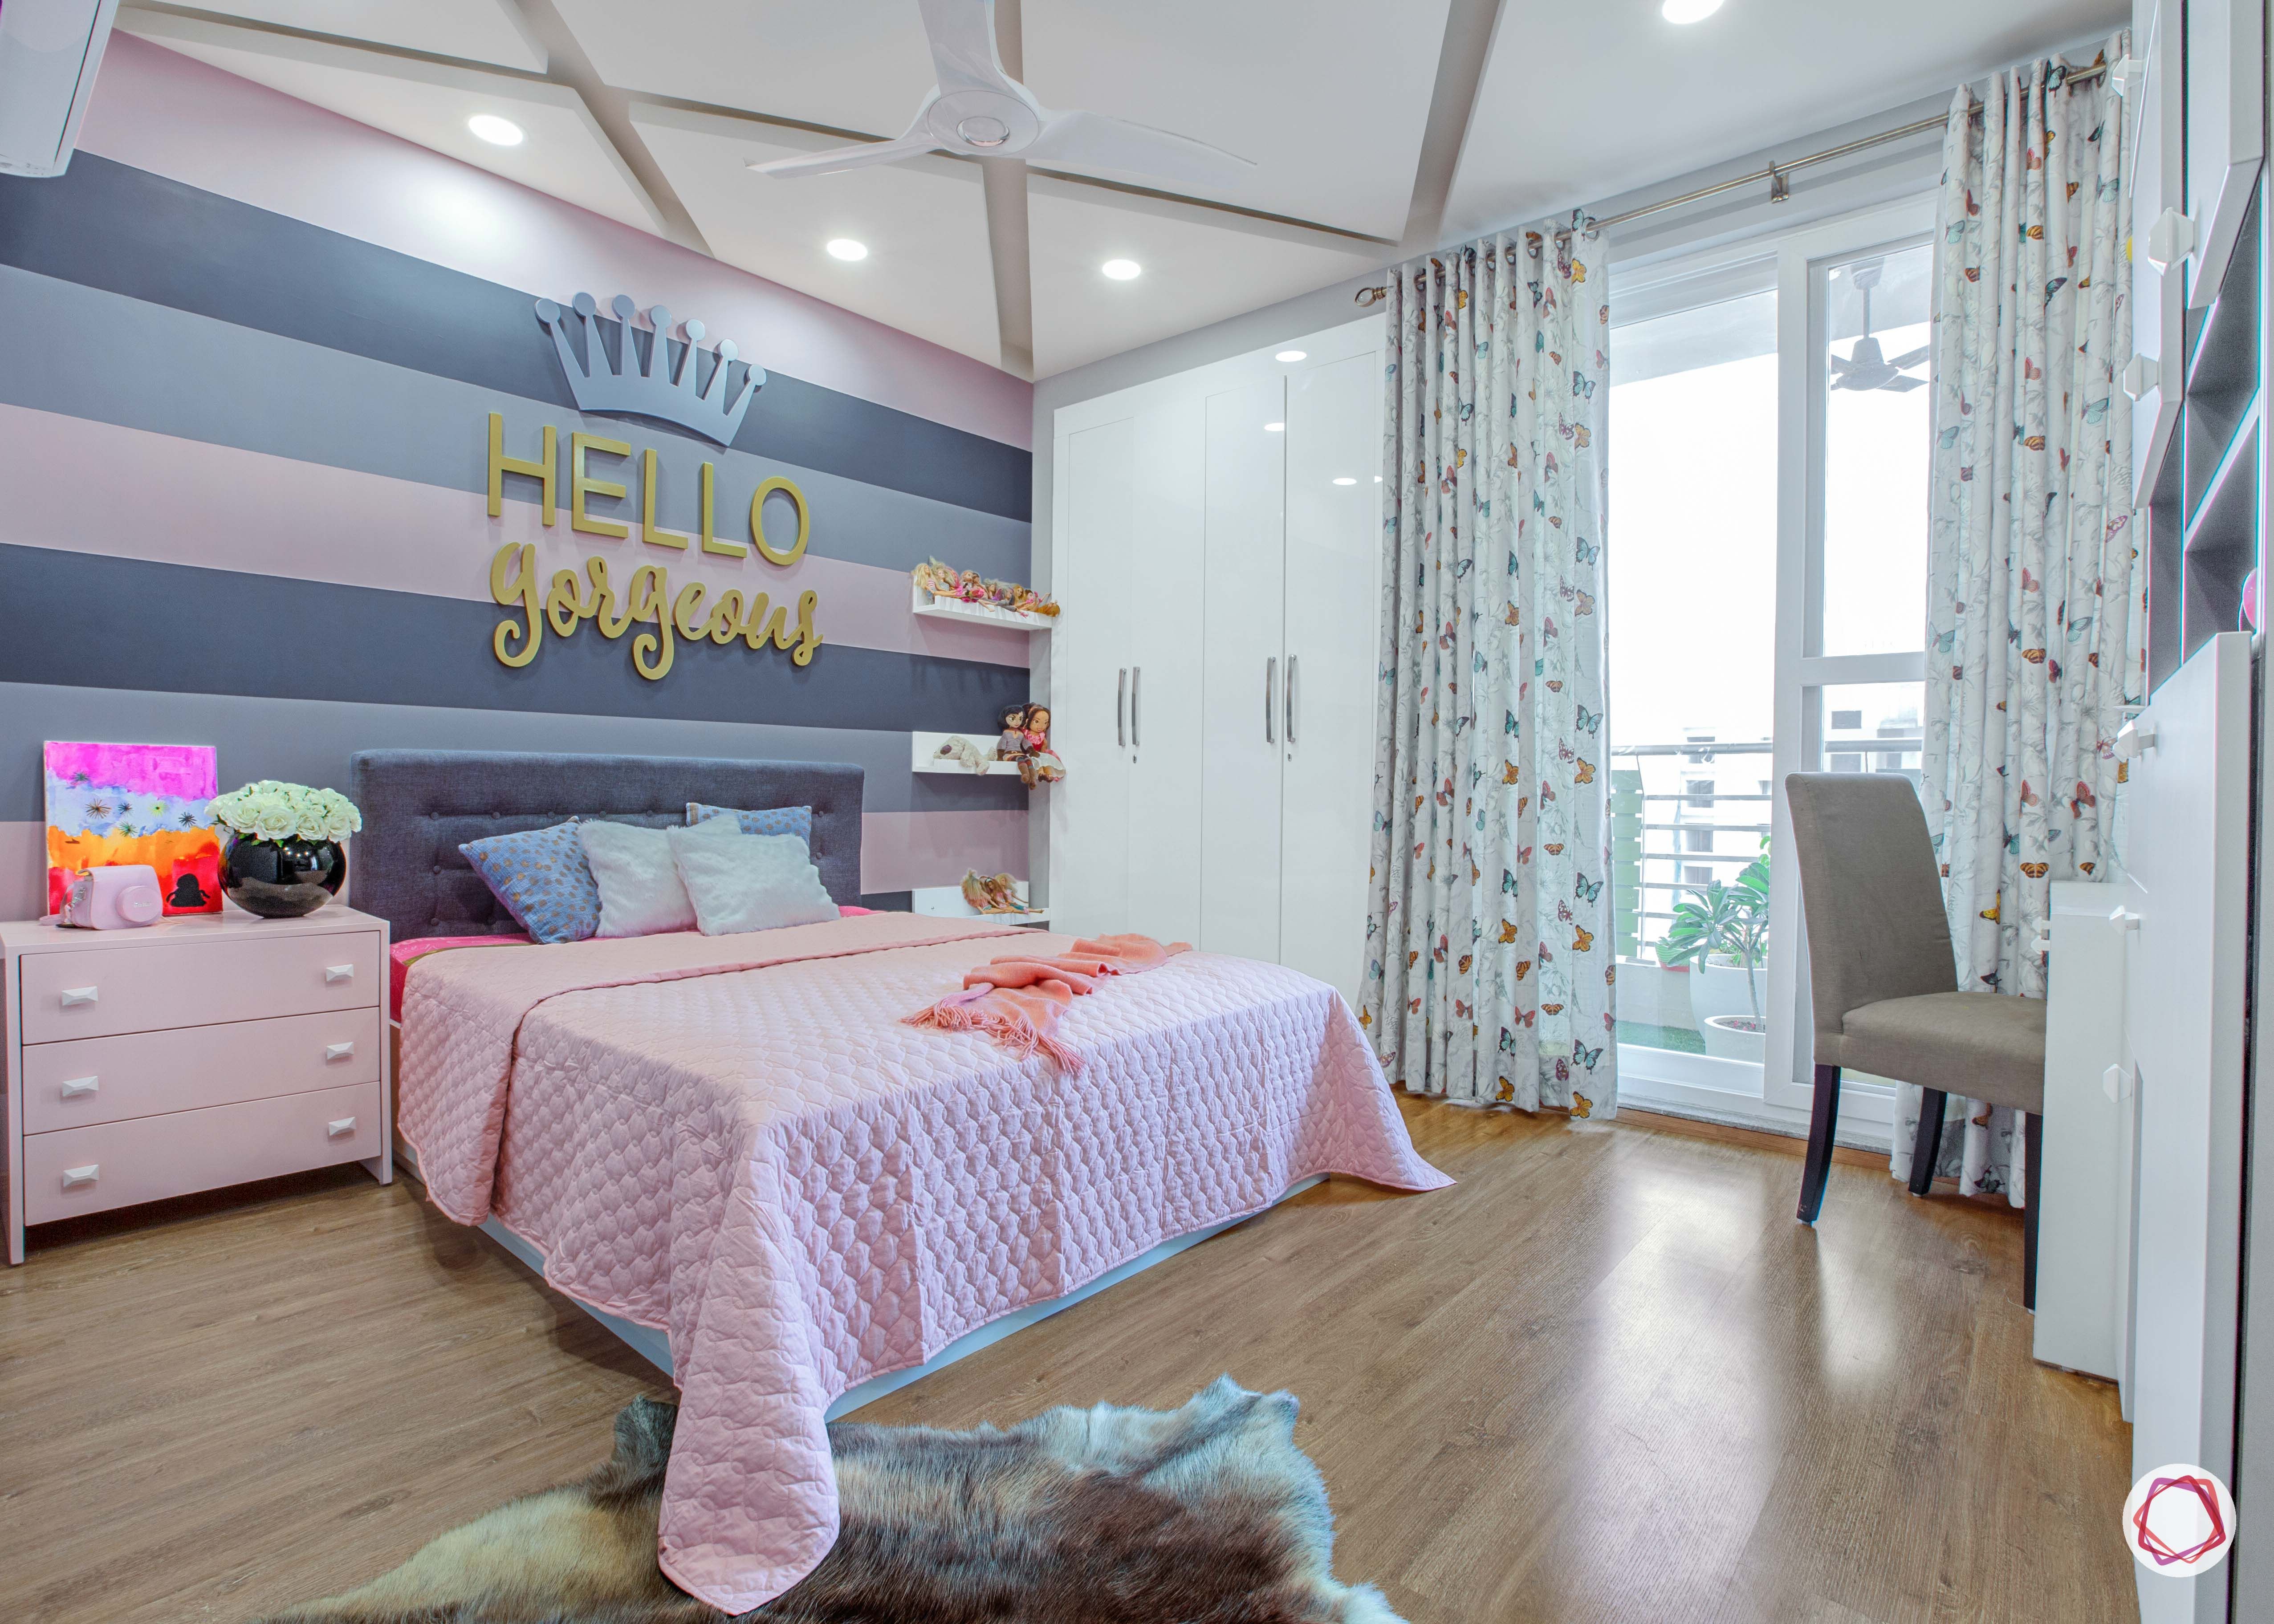 3 bhk flats in noida  daughters bedroom